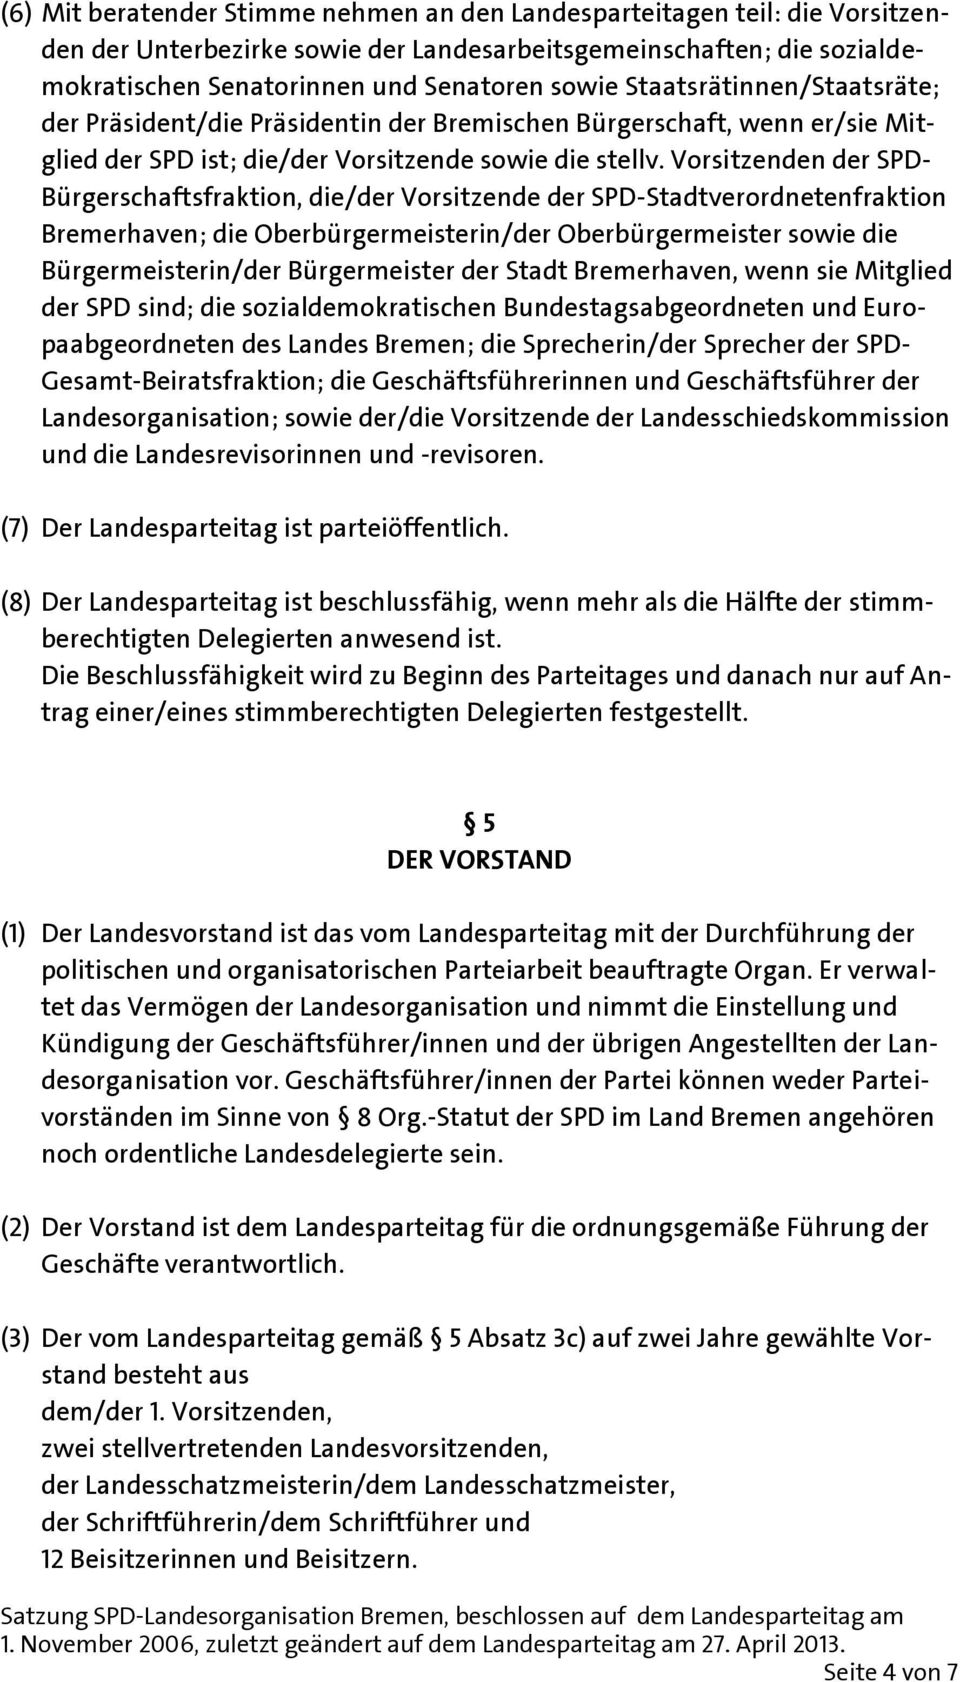 Vorsitzenden der SPD- Bürgerschaftsfraktion, die/der Vorsitzende der SPD-Stadtverordnetenfraktion Bremerhaven; die Oberbürgermeisterin/der Oberbürgermeister sowie die Bürgermeisterin/der